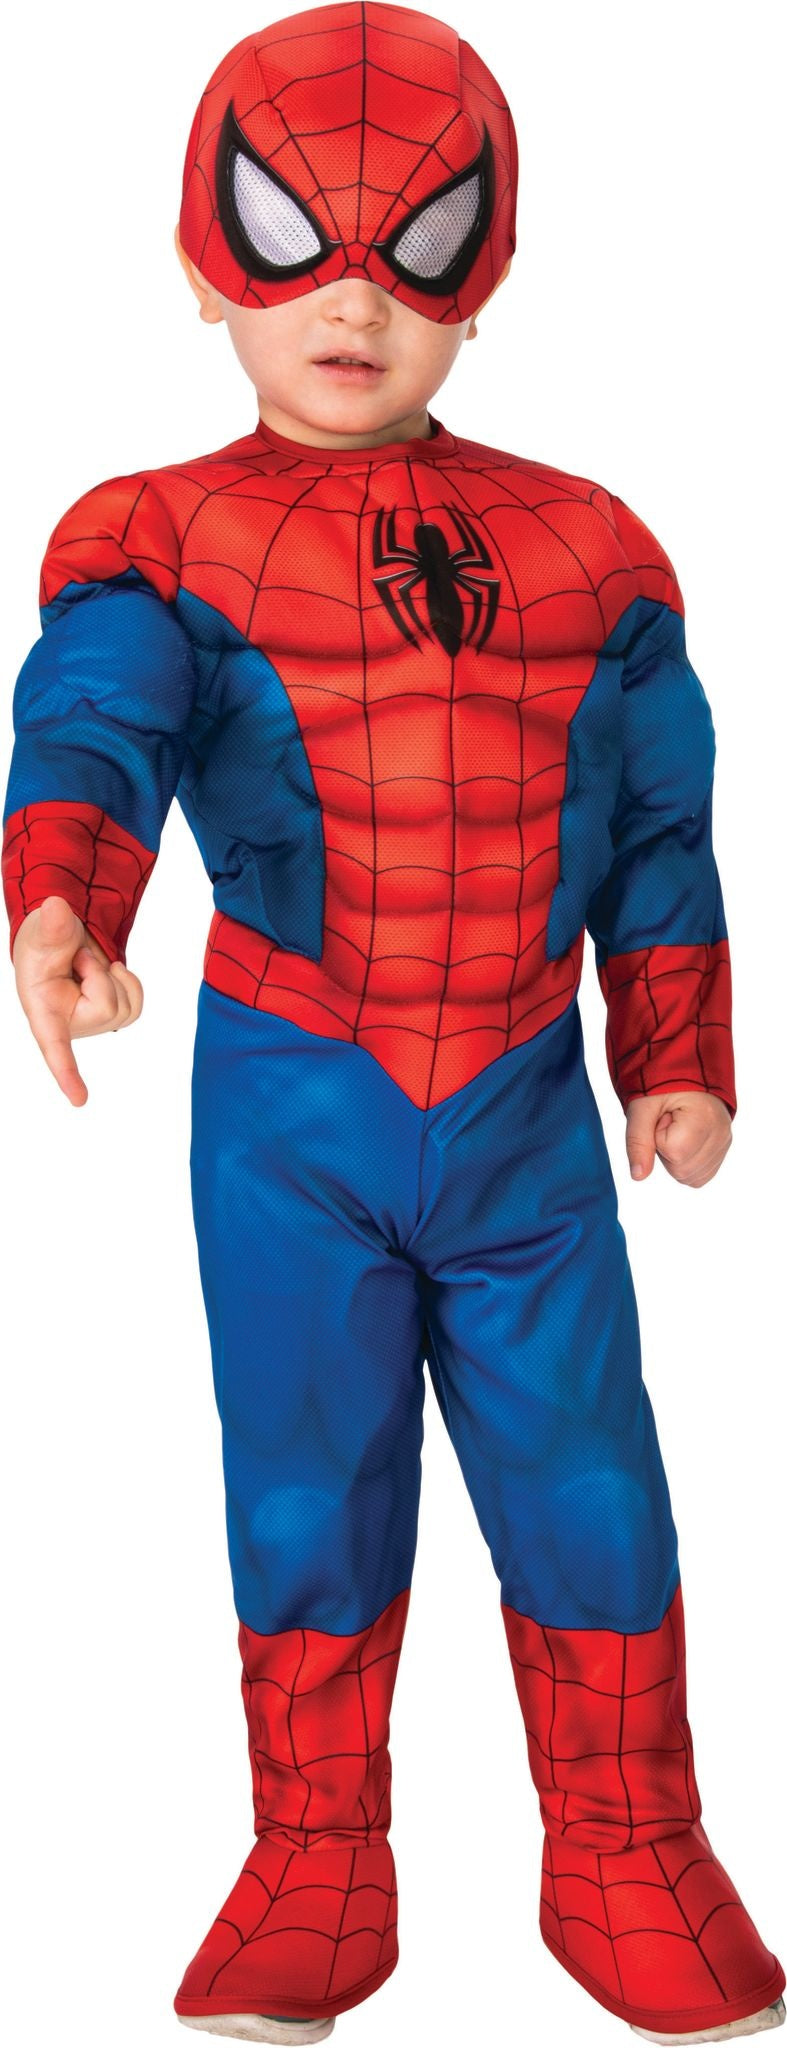 Toddler Deluxe Spider Man Costume | Super Hero Adventures